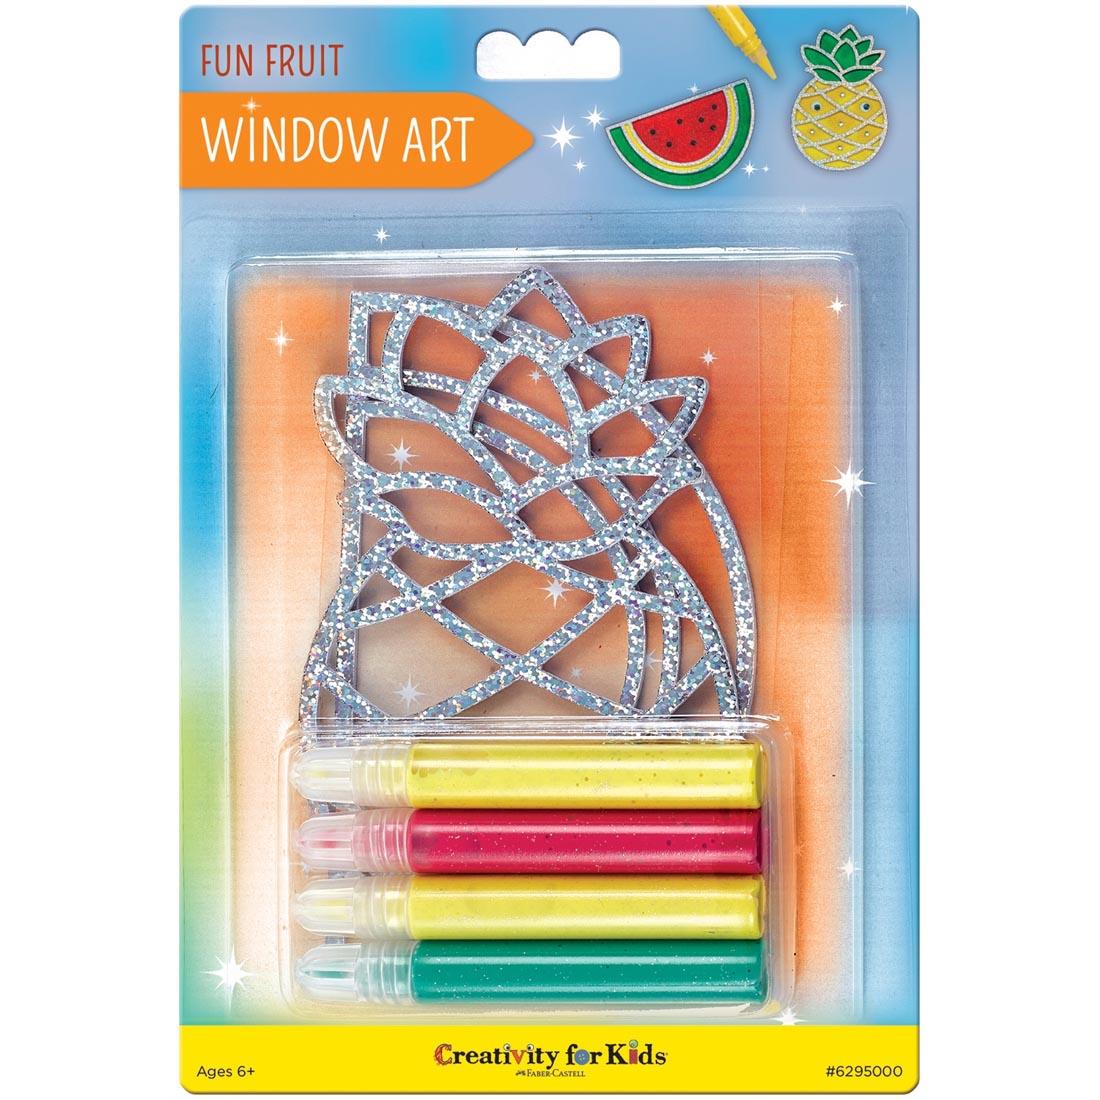 Fun Fruit Window Art By Creativity For Kids in package